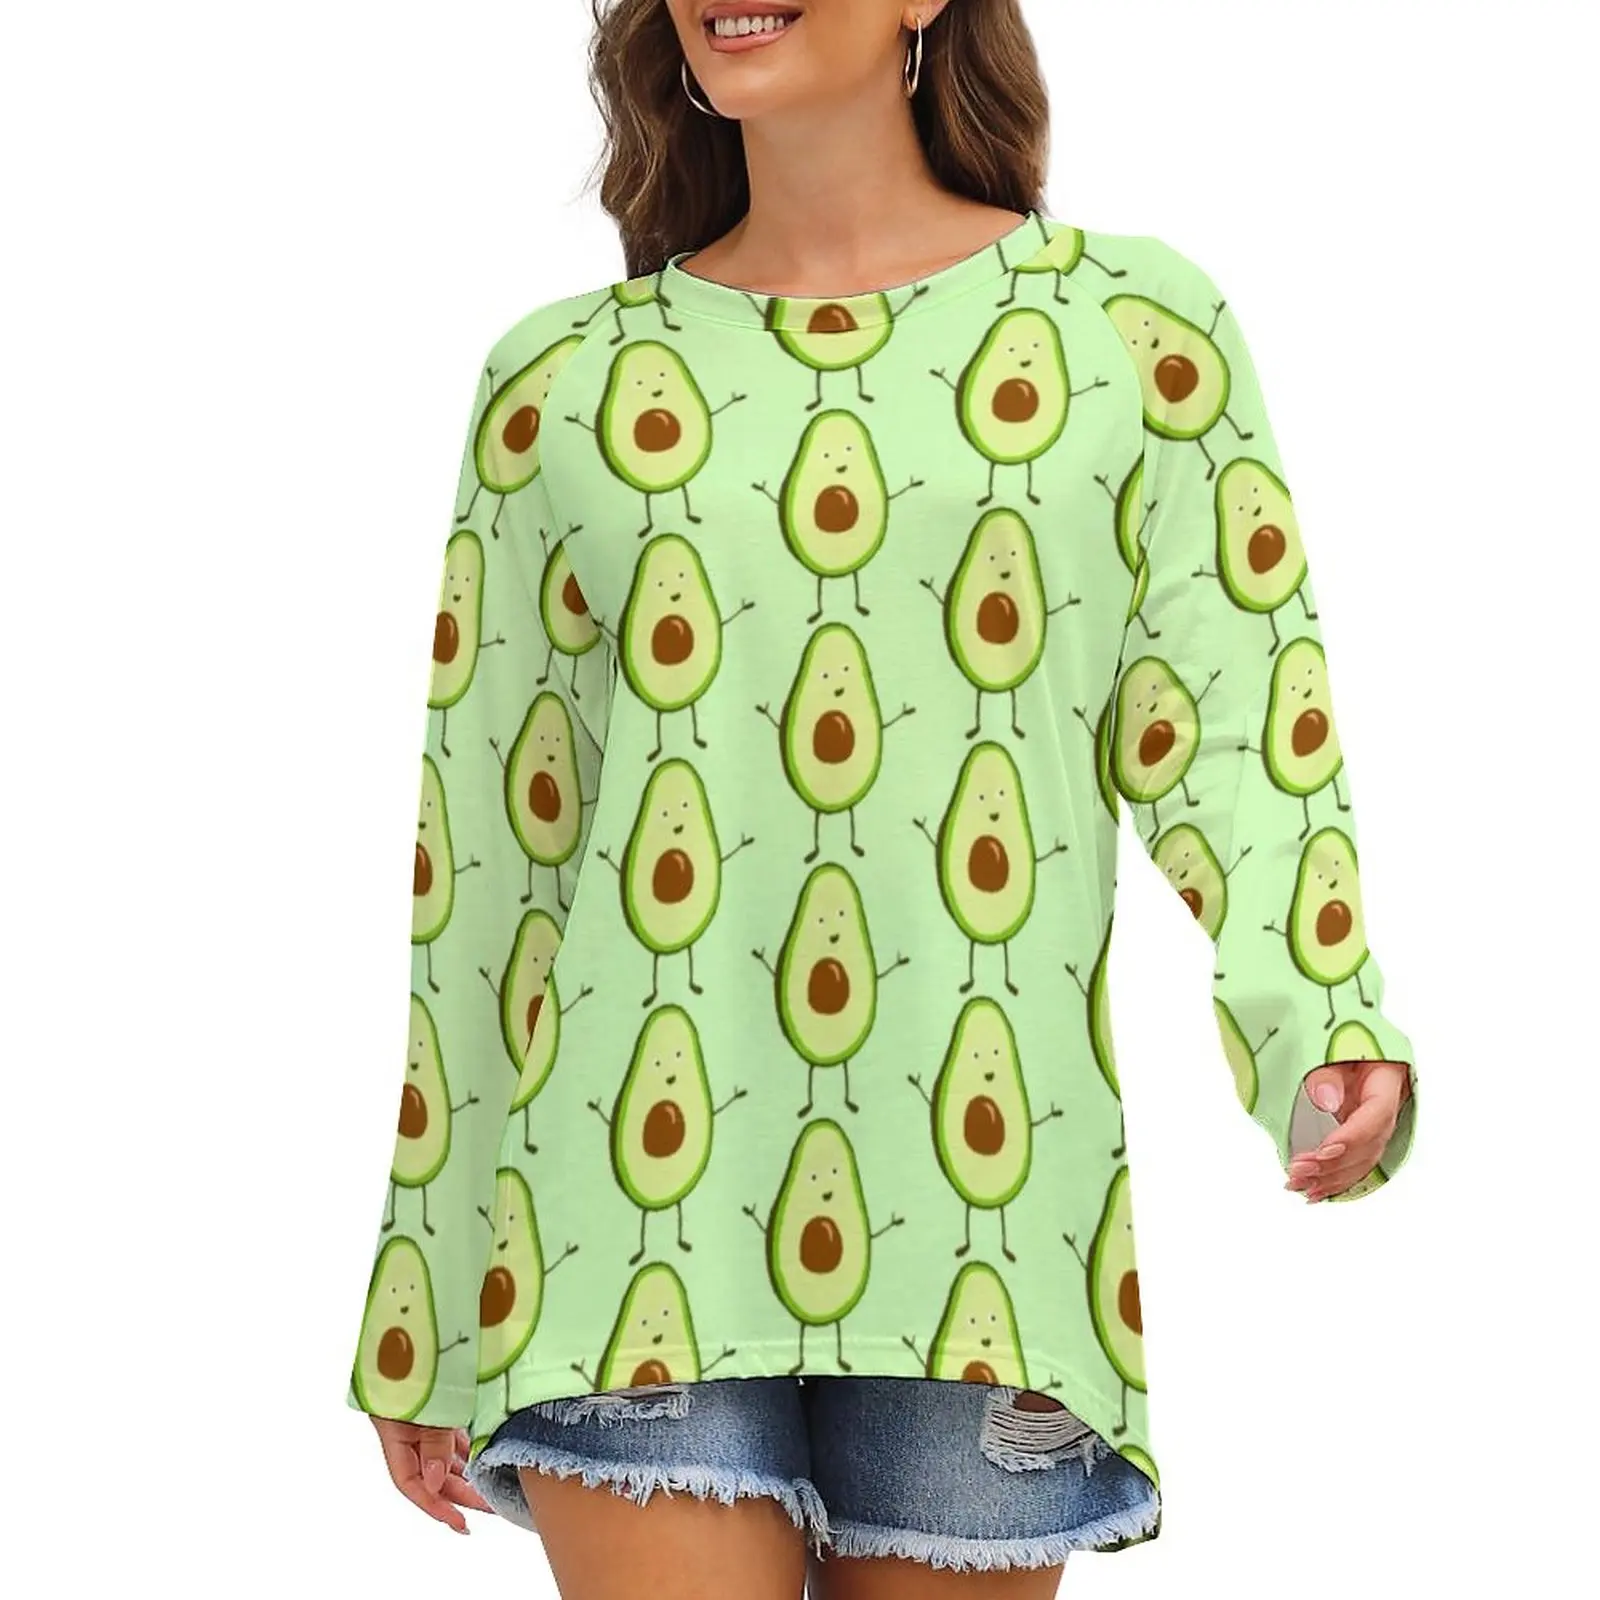 

Футболка с авокадо, фруктовая Женская забавная футболка в уличном стиле, футболка с длинным рукавом и узором